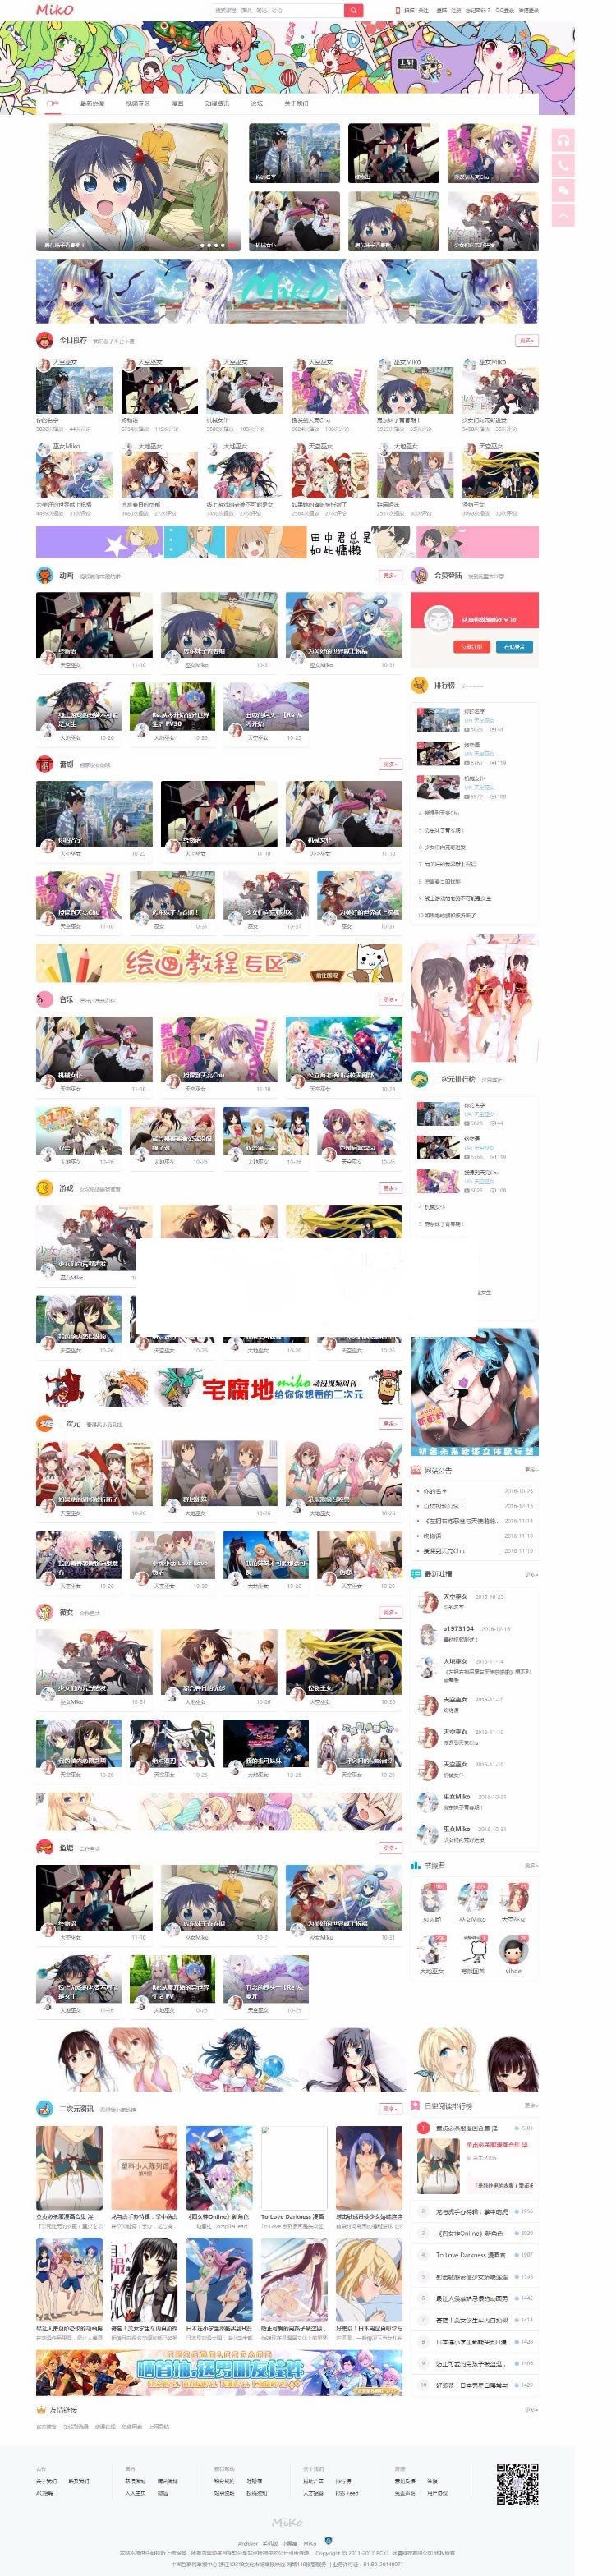 Miko弹幕视频网源码 Discuz动漫视频网站模板